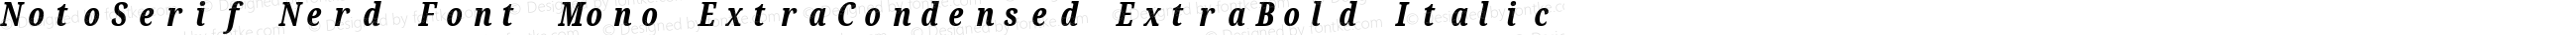 Noto Serif ExtraCondensed ExtraBold Italic Nerd Font Complete Mono